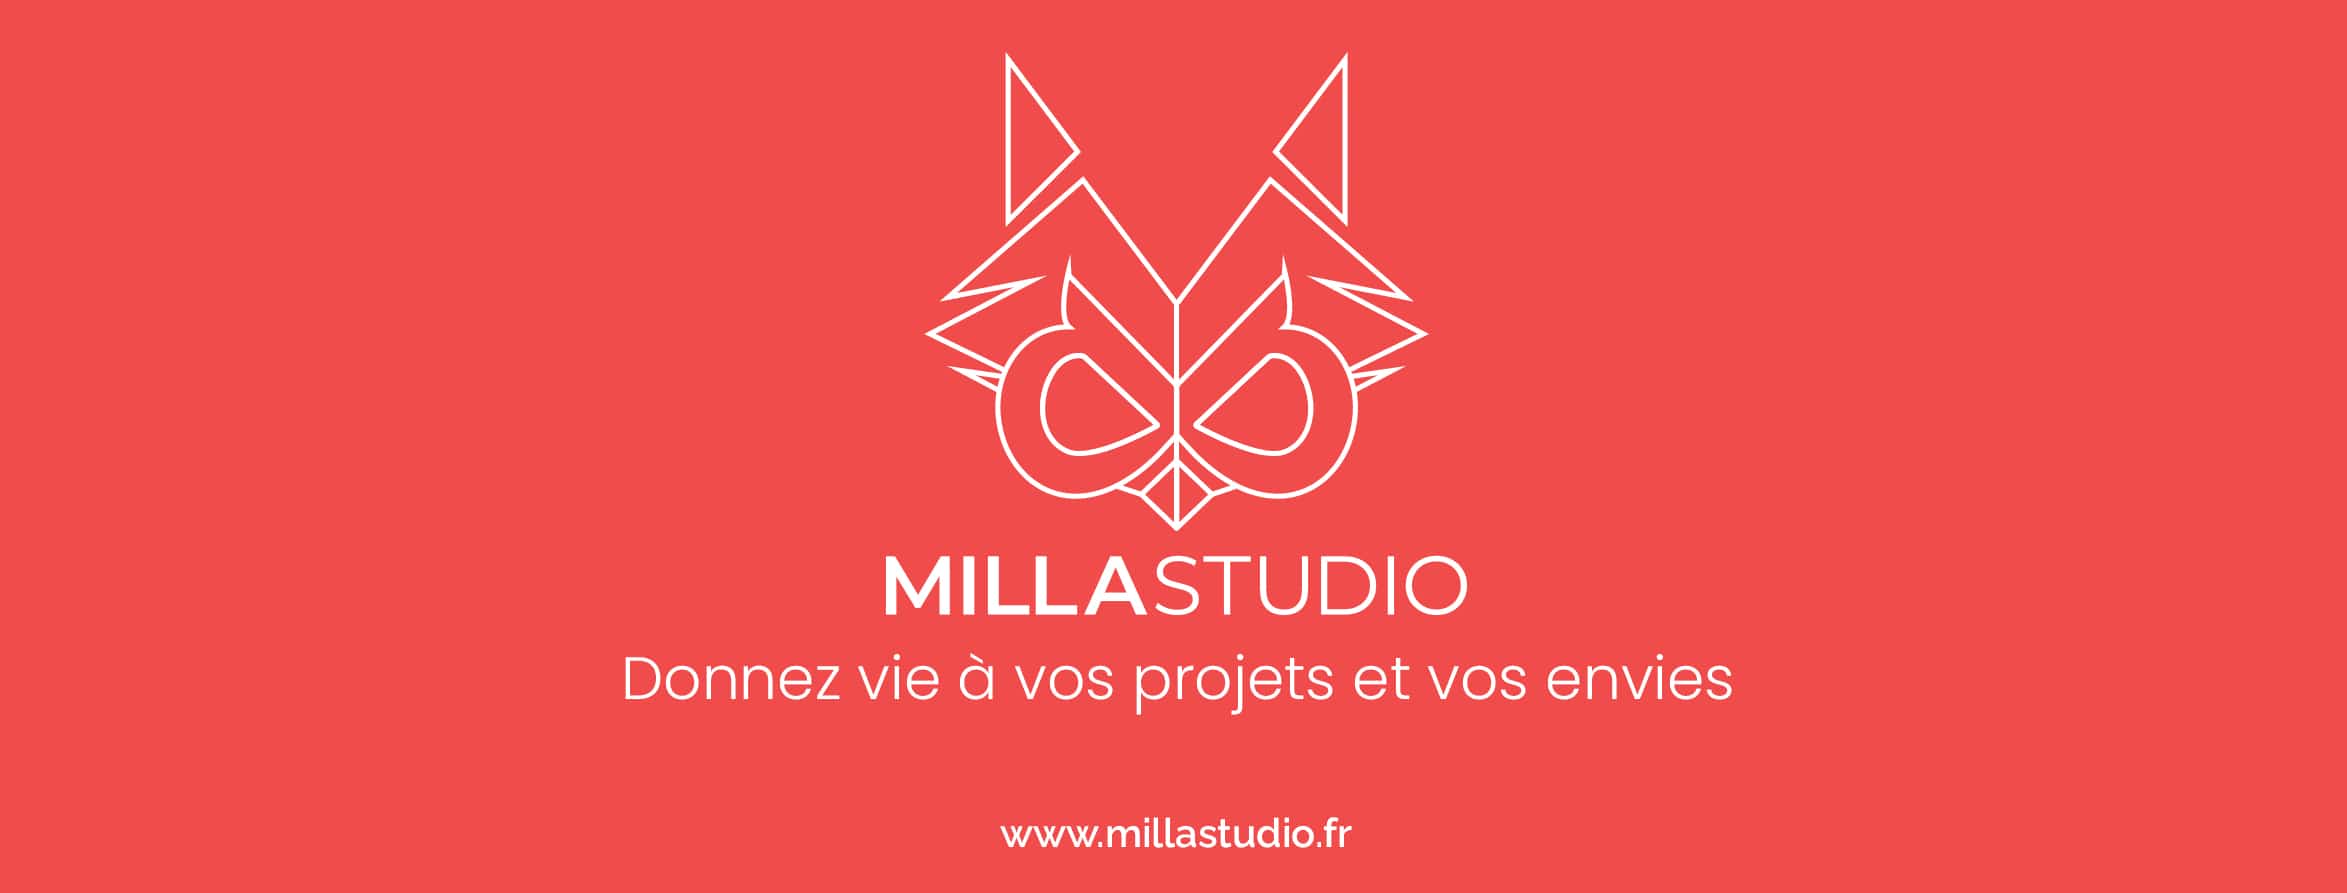 bandeau Milla Studio - Un concept store destiné à l'art sous toutes ses formes